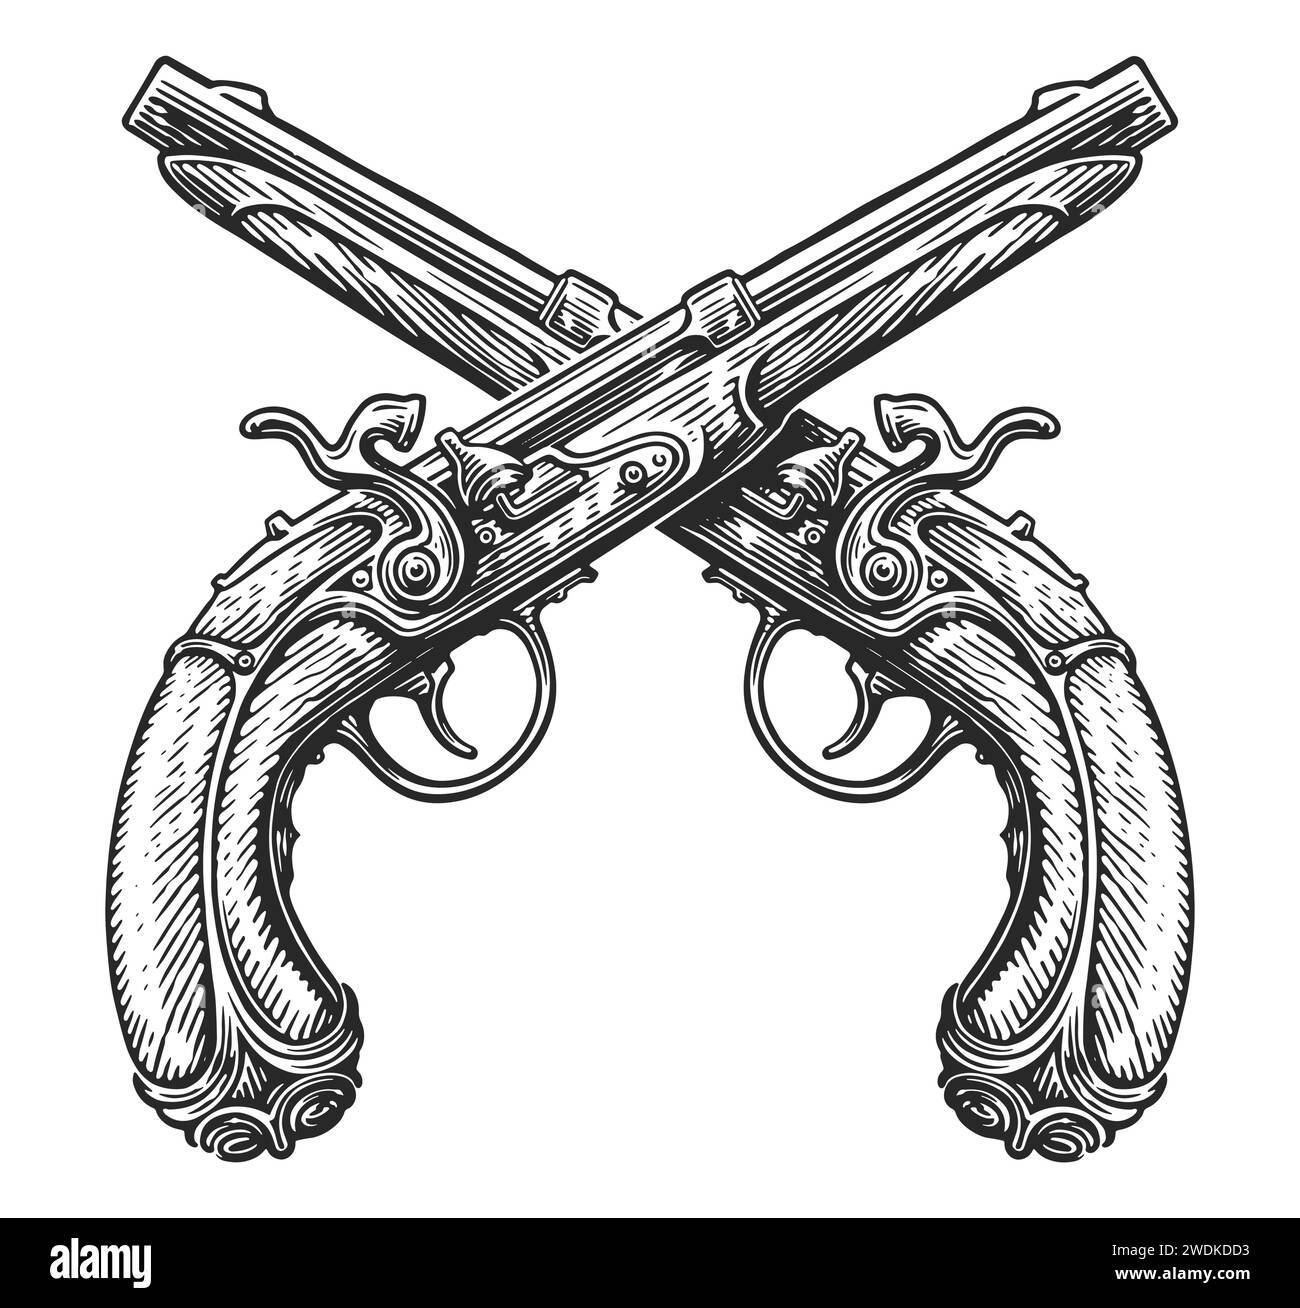 Pistolets à silex croisés, croquis. Deux fusils, armes à feu. Illustration vectorielle vintage dessinée à la main Illustration de Vecteur